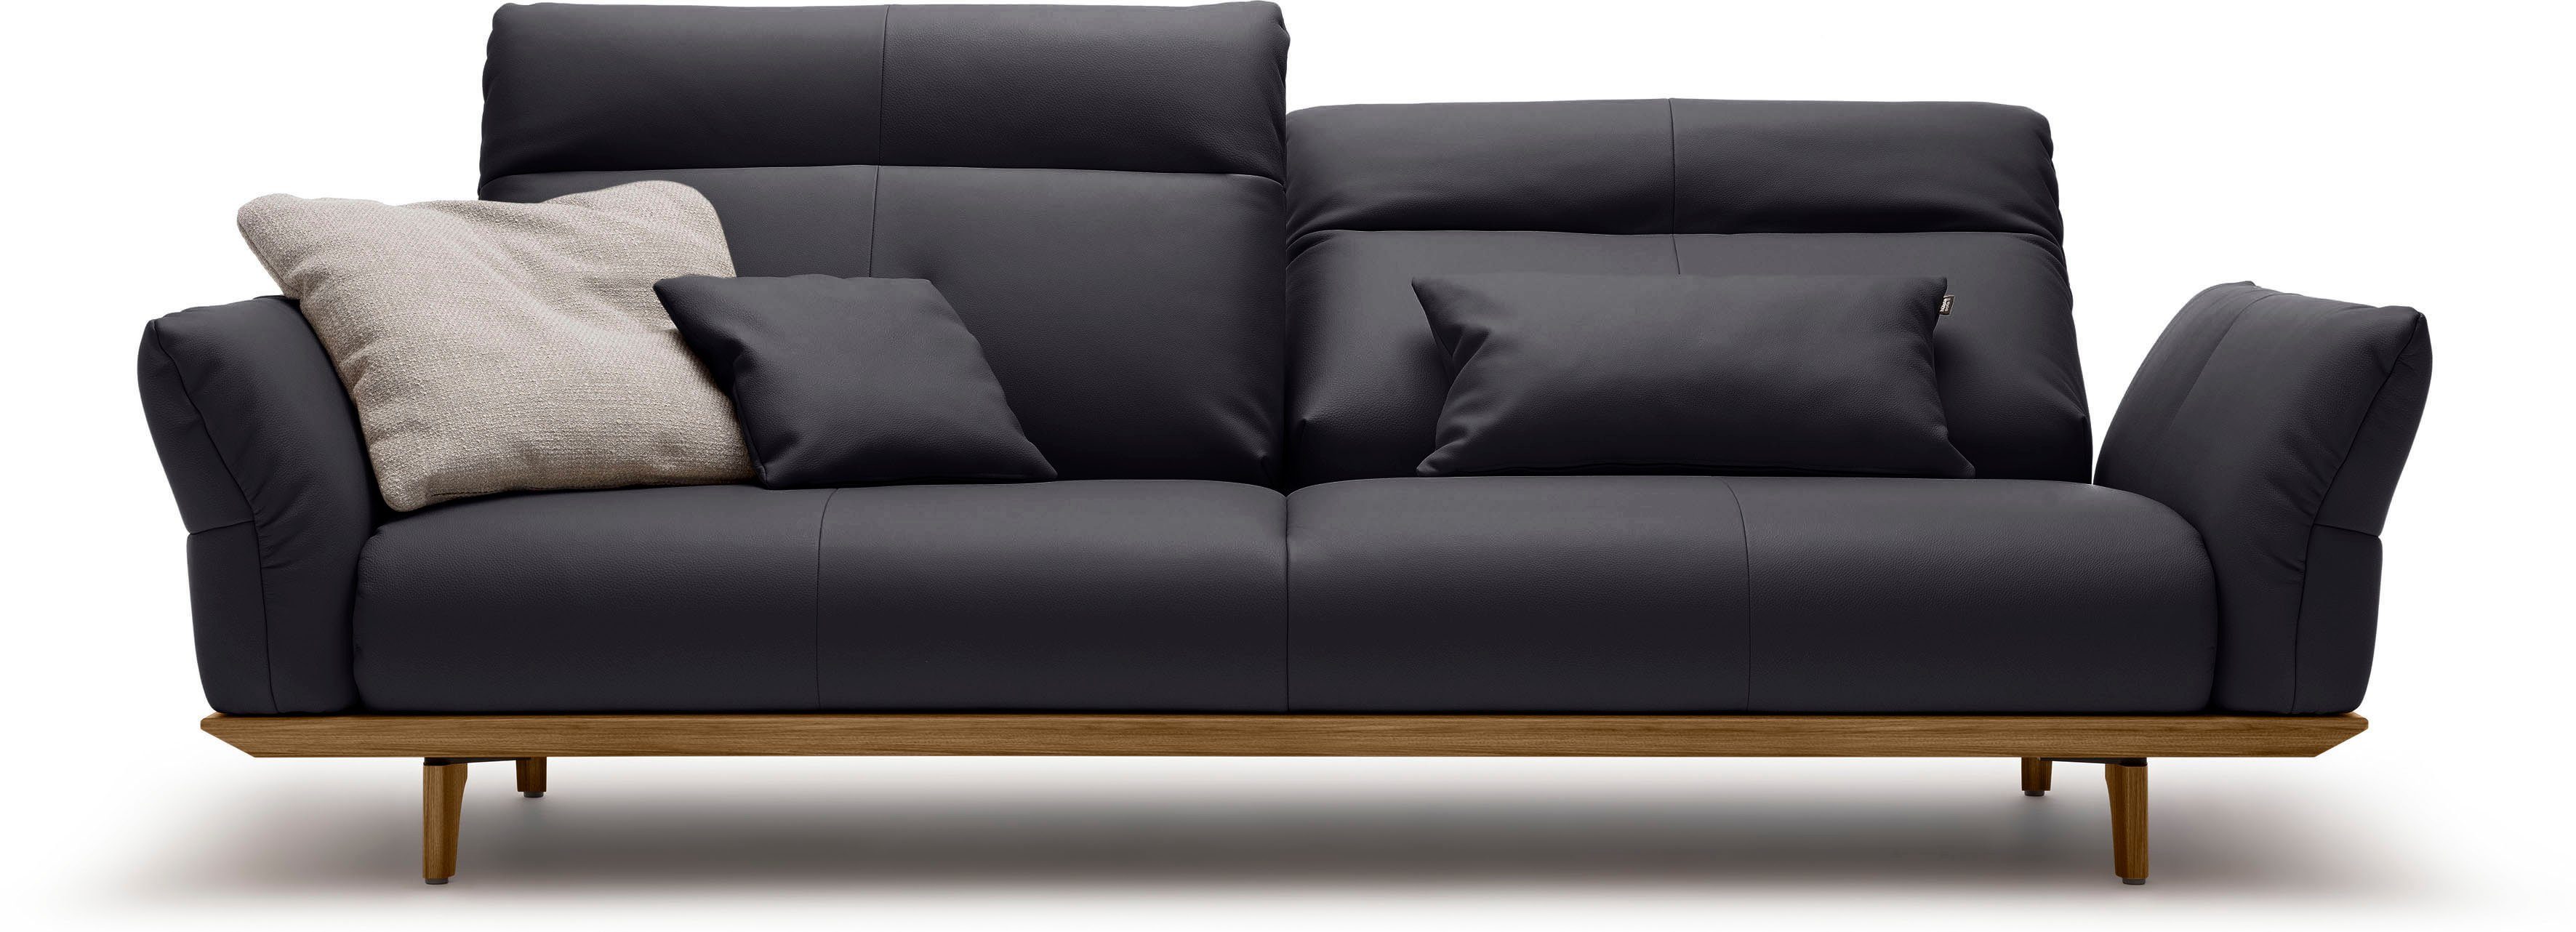 hülsta sofa 3,5-Sitzer hs.460, Sockel und Füße in Nussbaum, Breite 228 cm